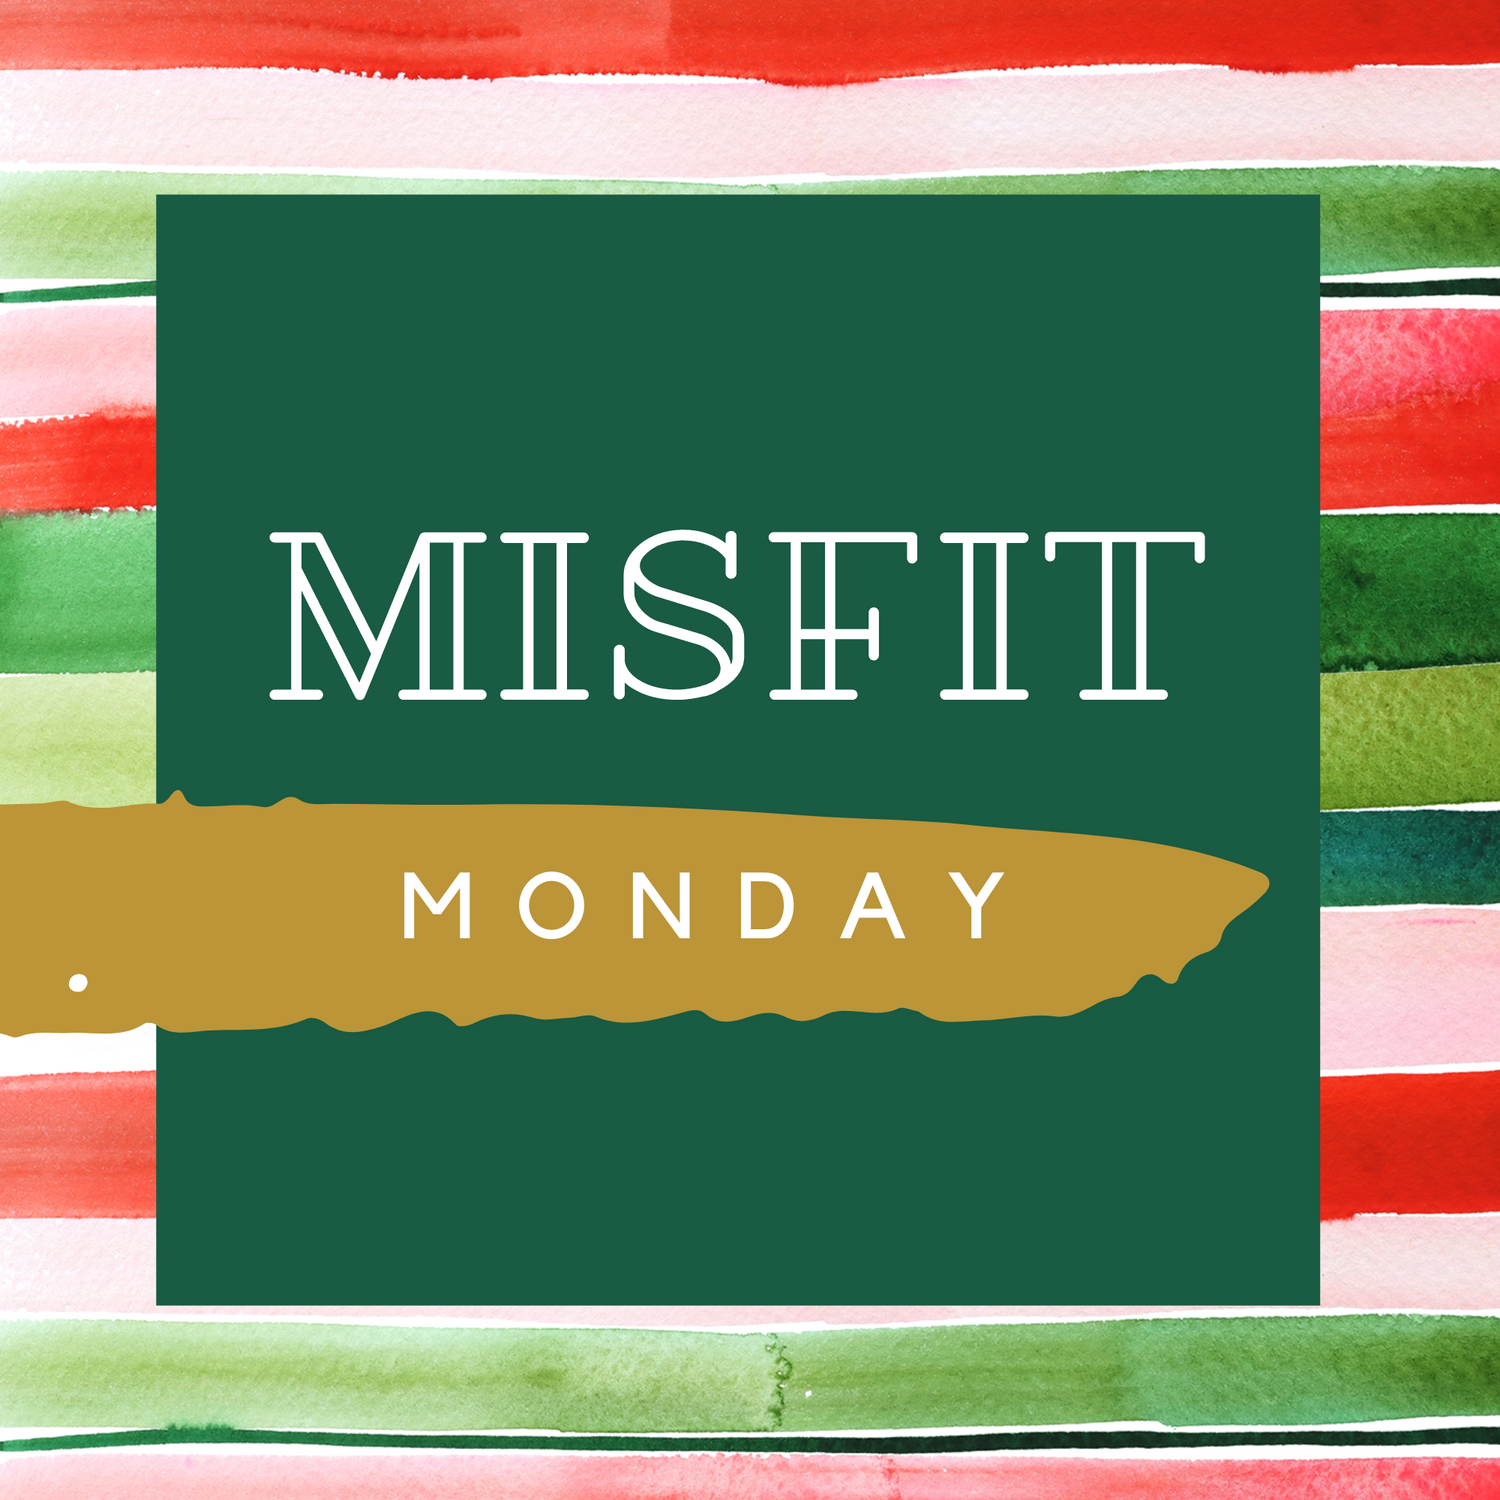 NEXT UP : MISFIT Monday!